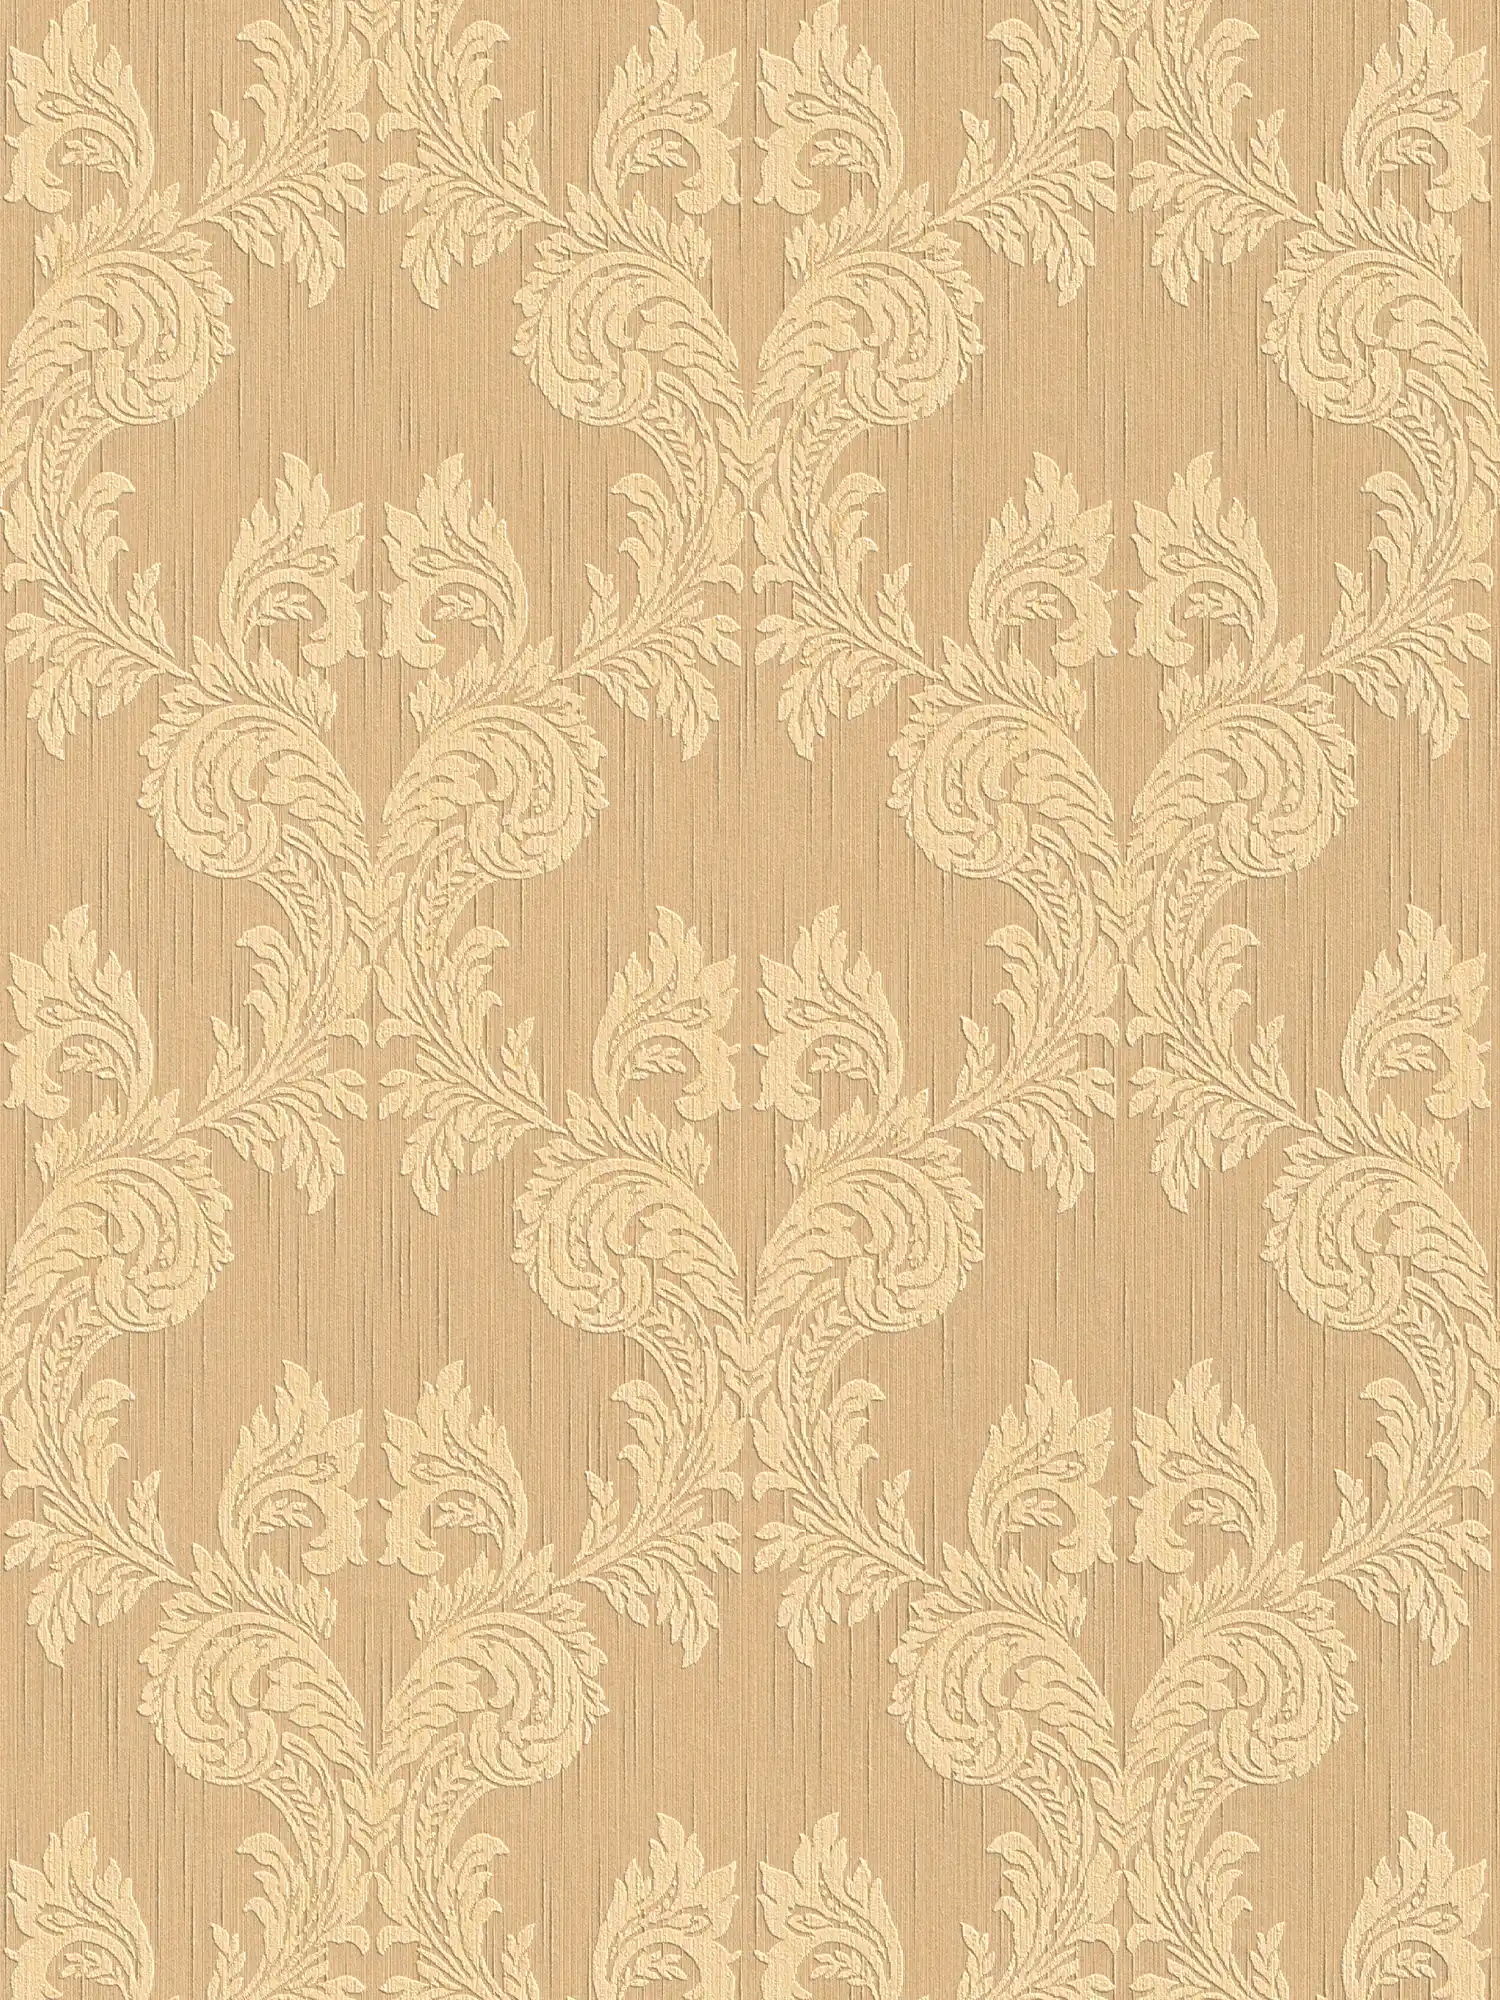 behangpapier structuur & ornament patroon in klassieke stijl - oranje
